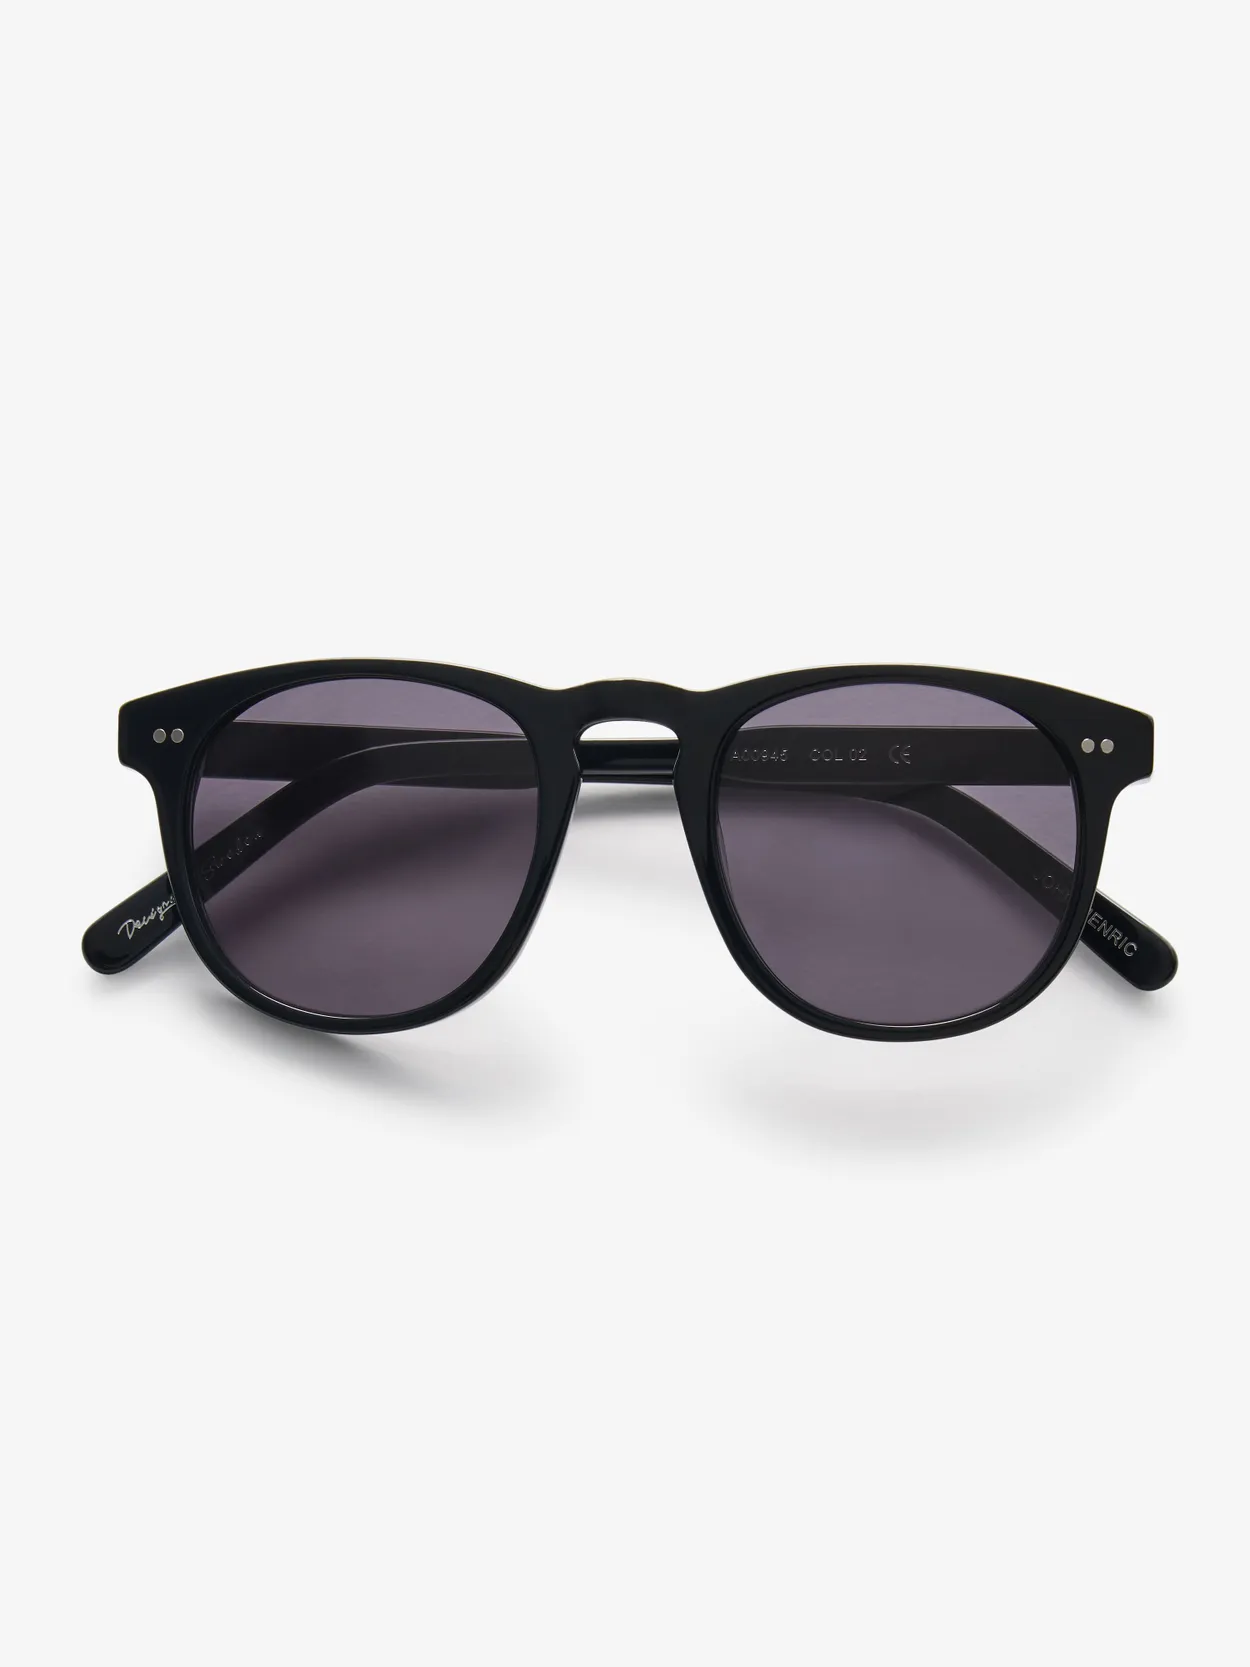 Black Sunglasses Los Angeles